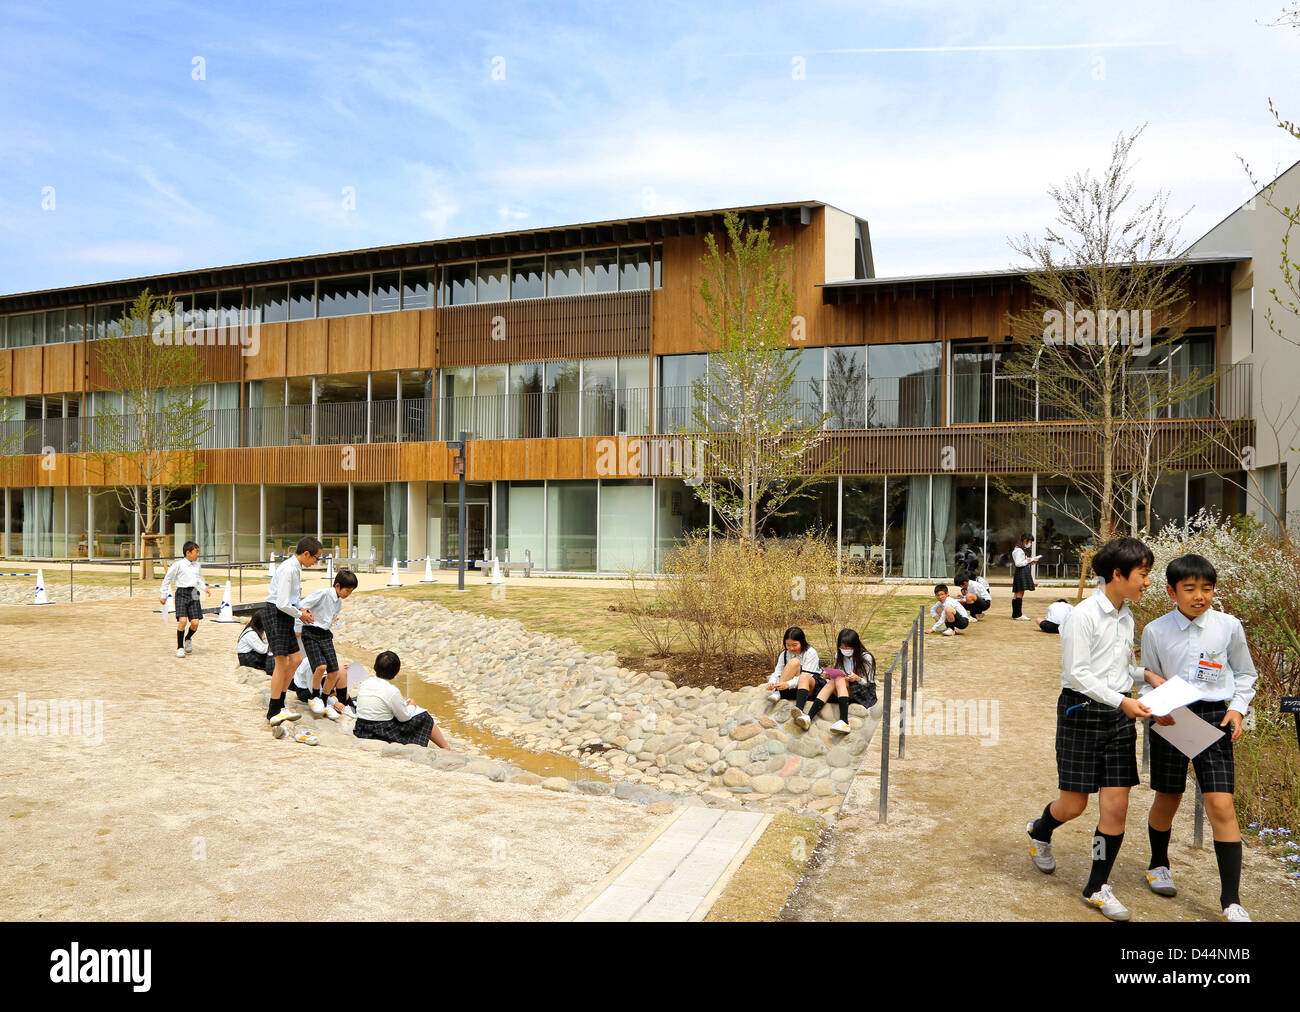 Teikyo University Elementary School, Tokyo, Japon. Architecte : Kengo Kuma, 2012. Vue extérieure globale au cours de biologie des travaux sur le terrain. Banque D'Images